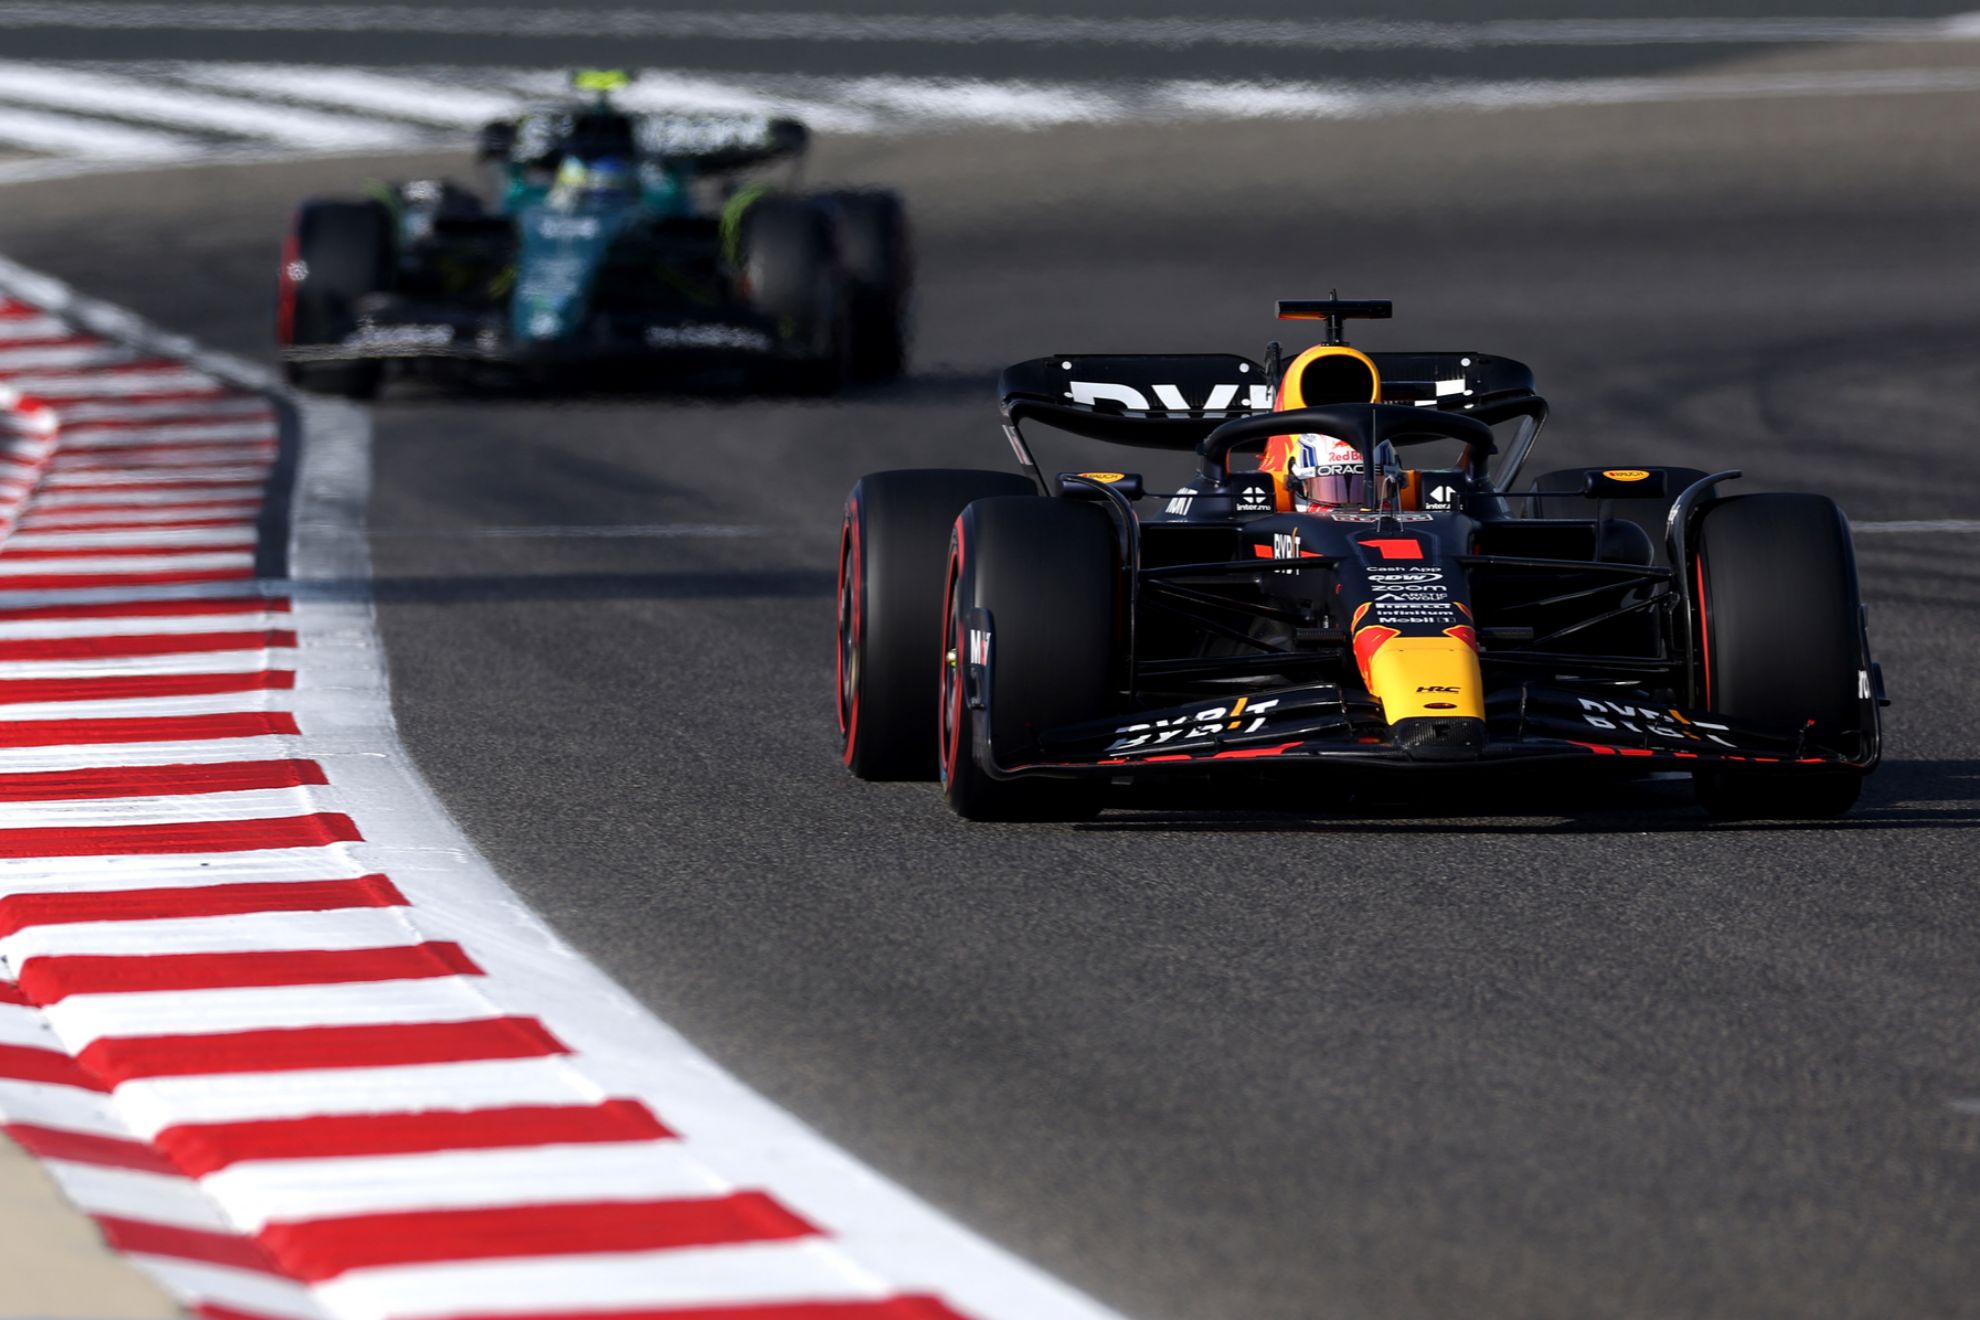 Veremos en prximas carreras un duelo directo entre Alonso y Verstappen?